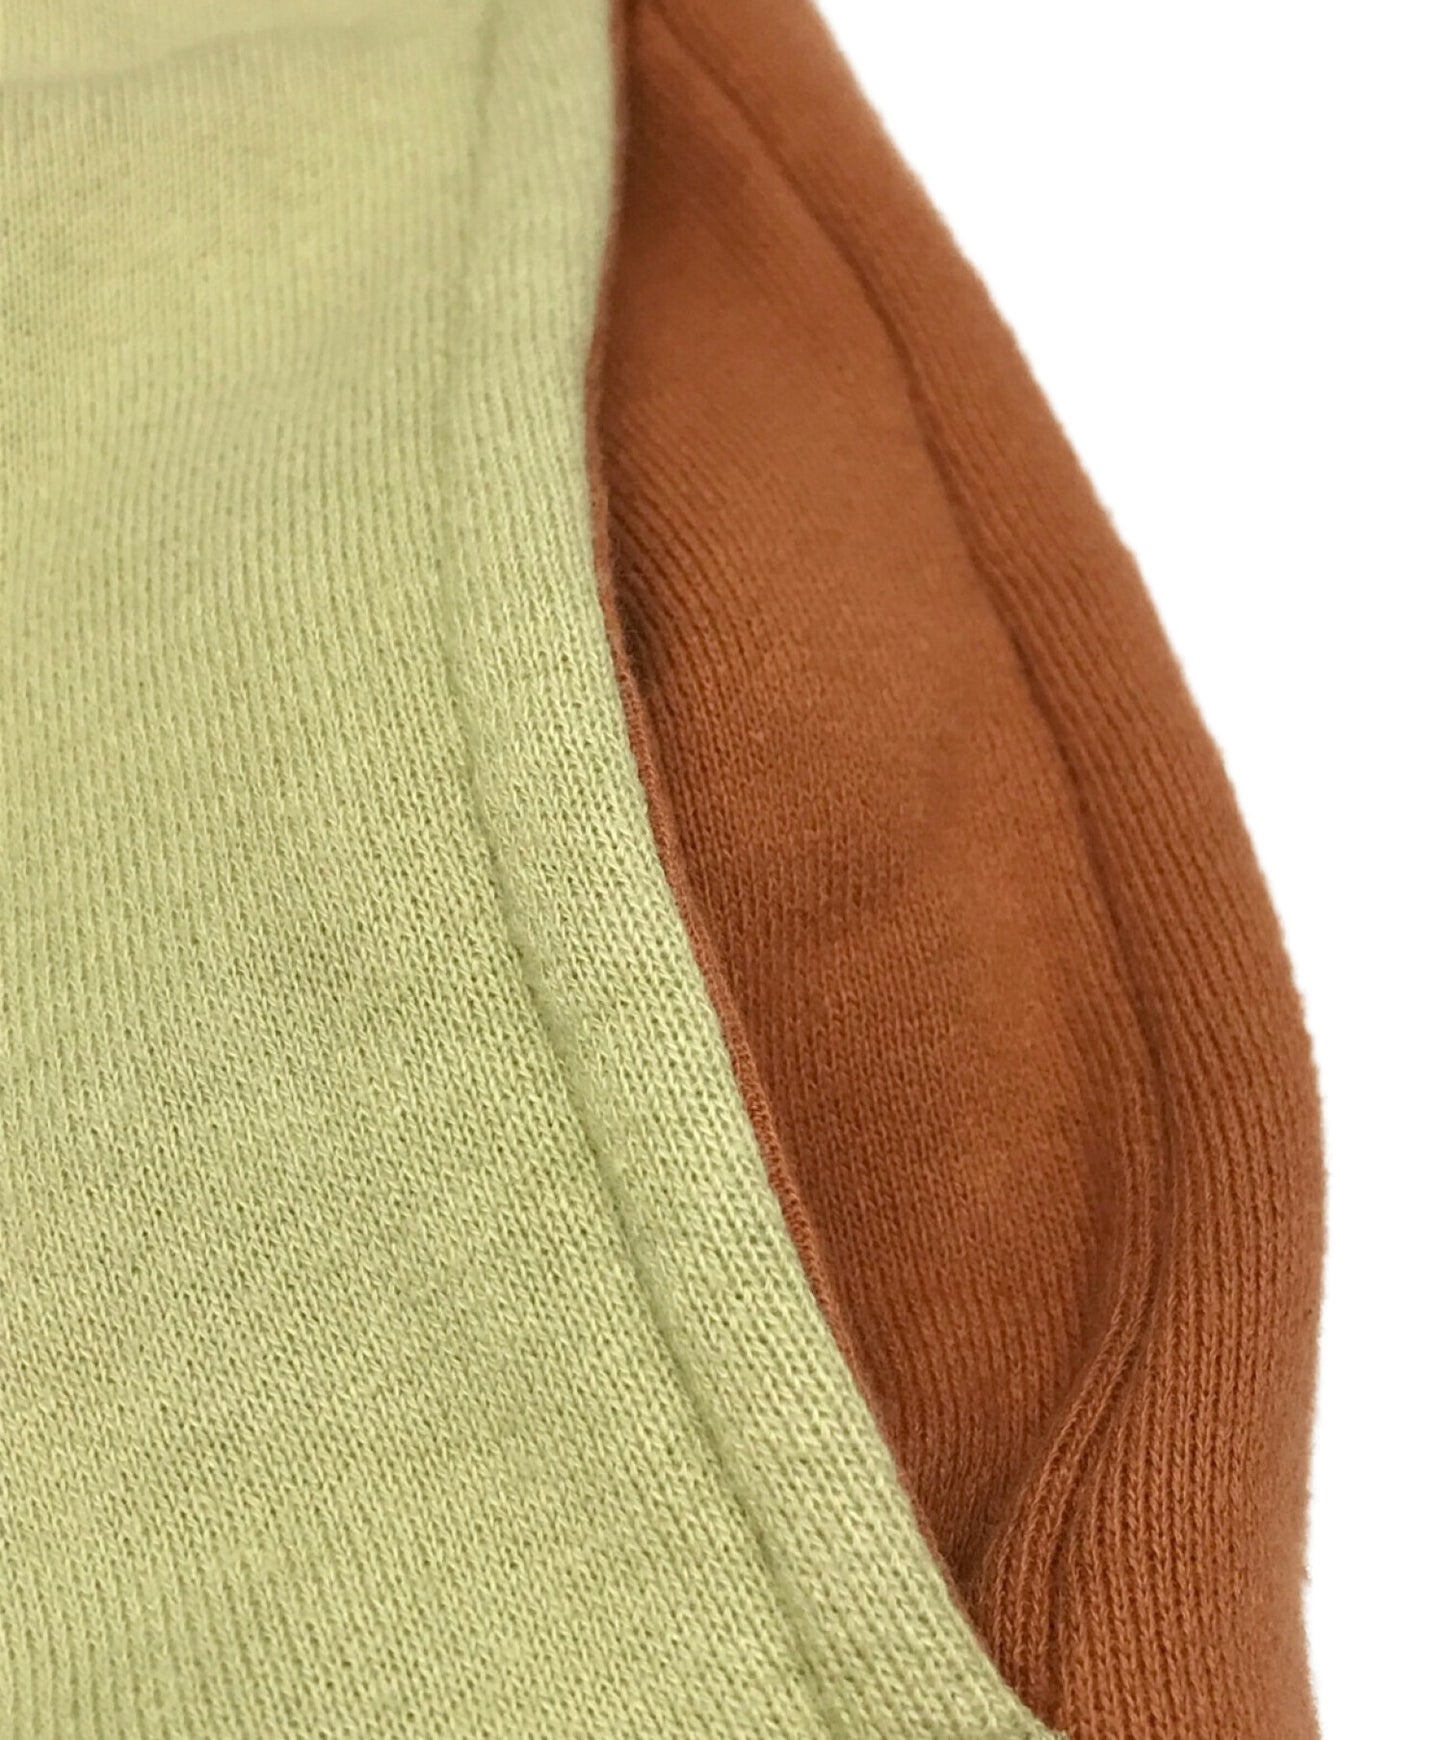 臥底發條橙色的高領衫印刷運動衫UCX4805-1